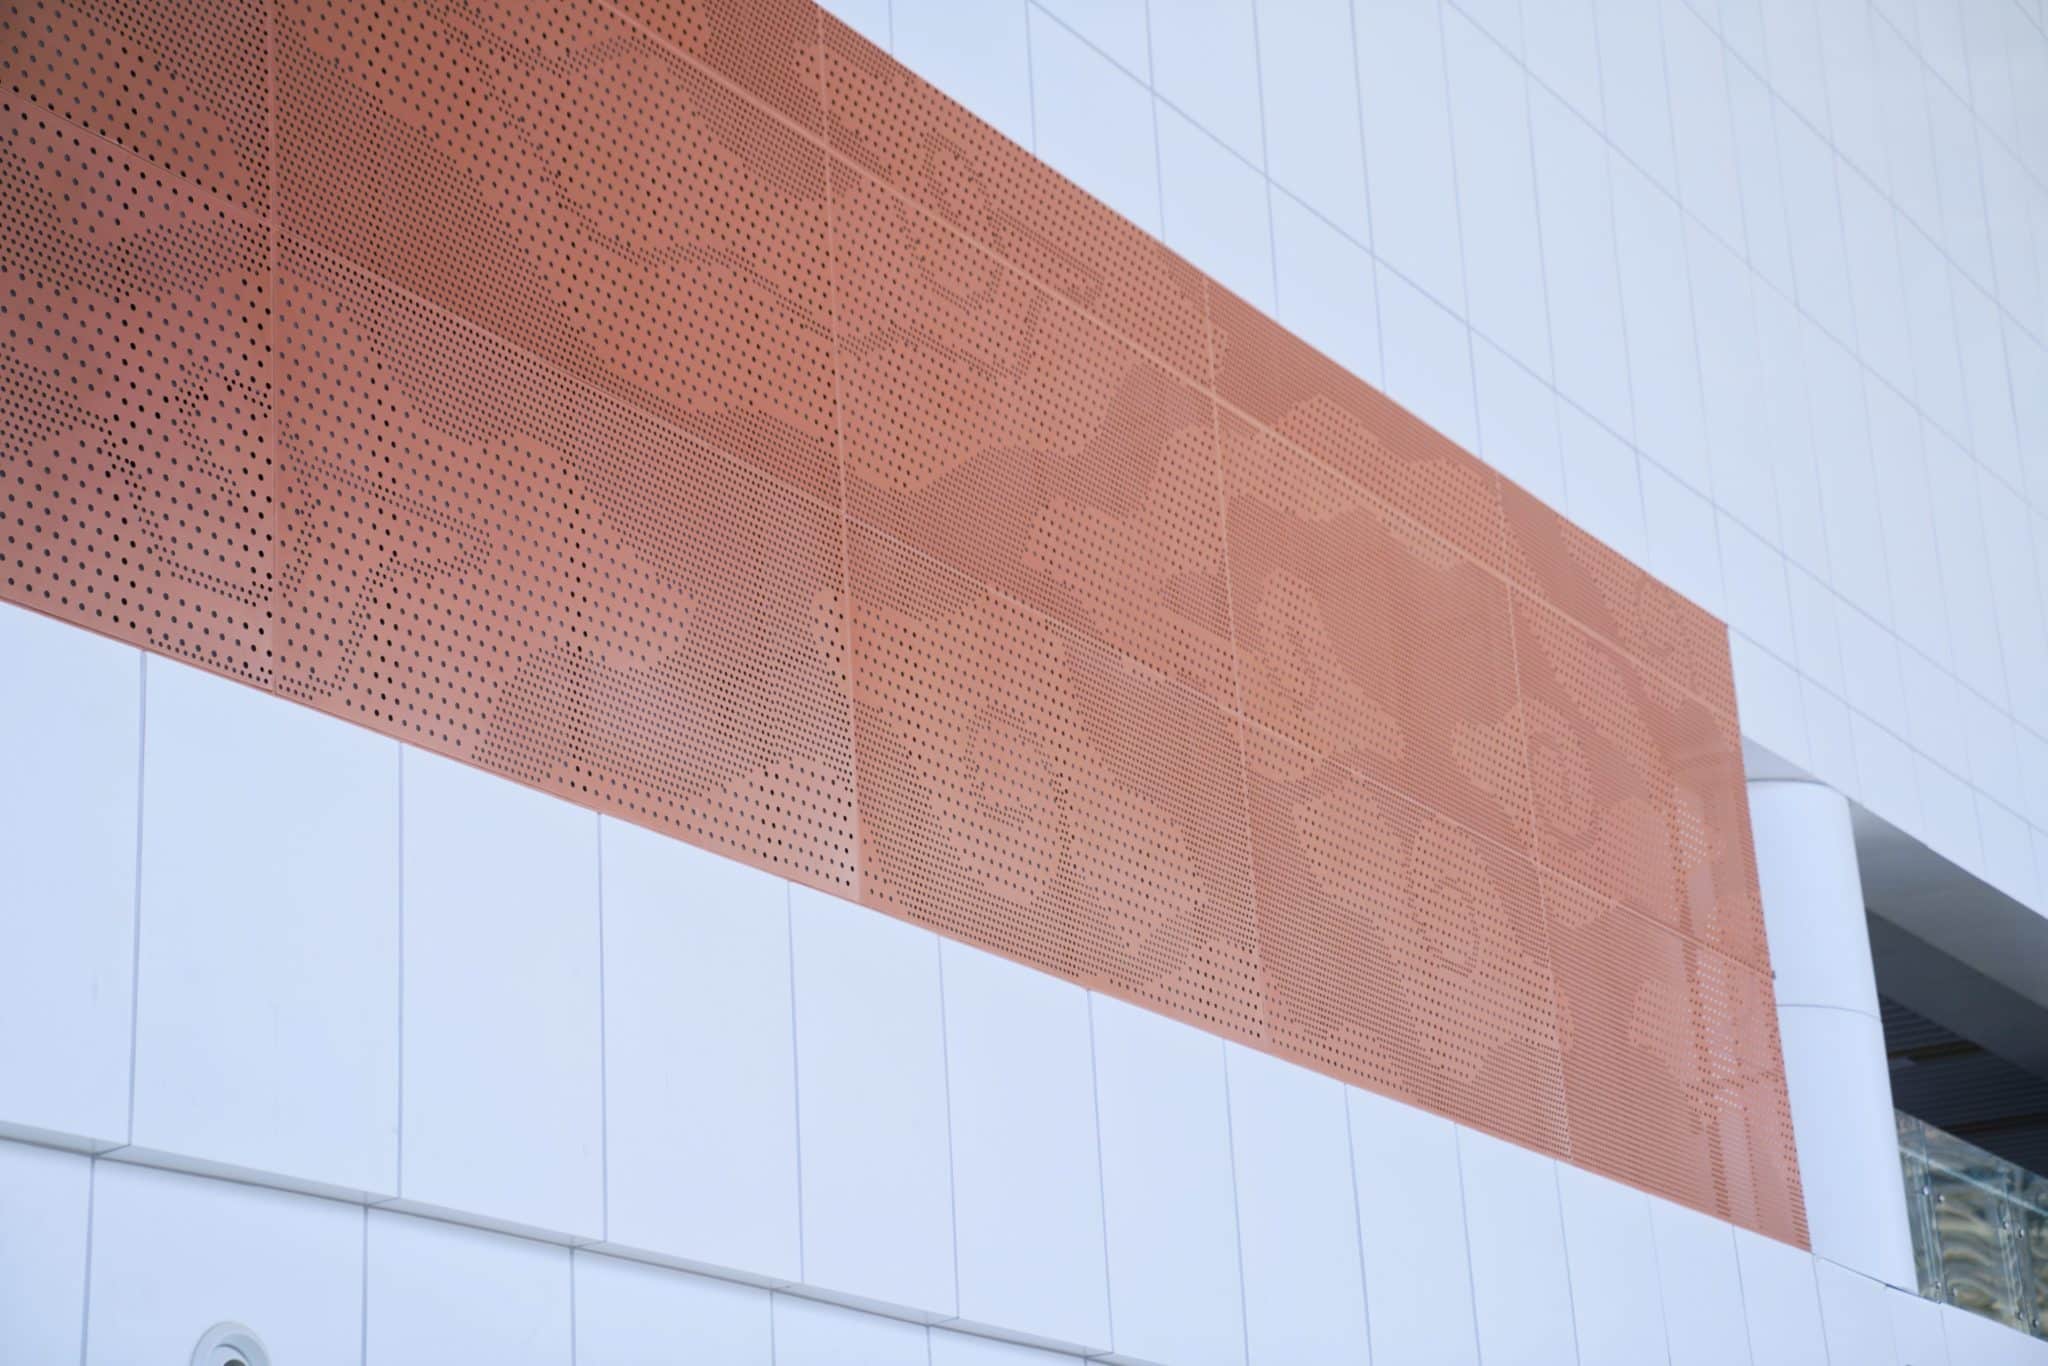 Stasiun KA Cepat Halim akan menambahkan ornamen motif batik Betawi di dinding